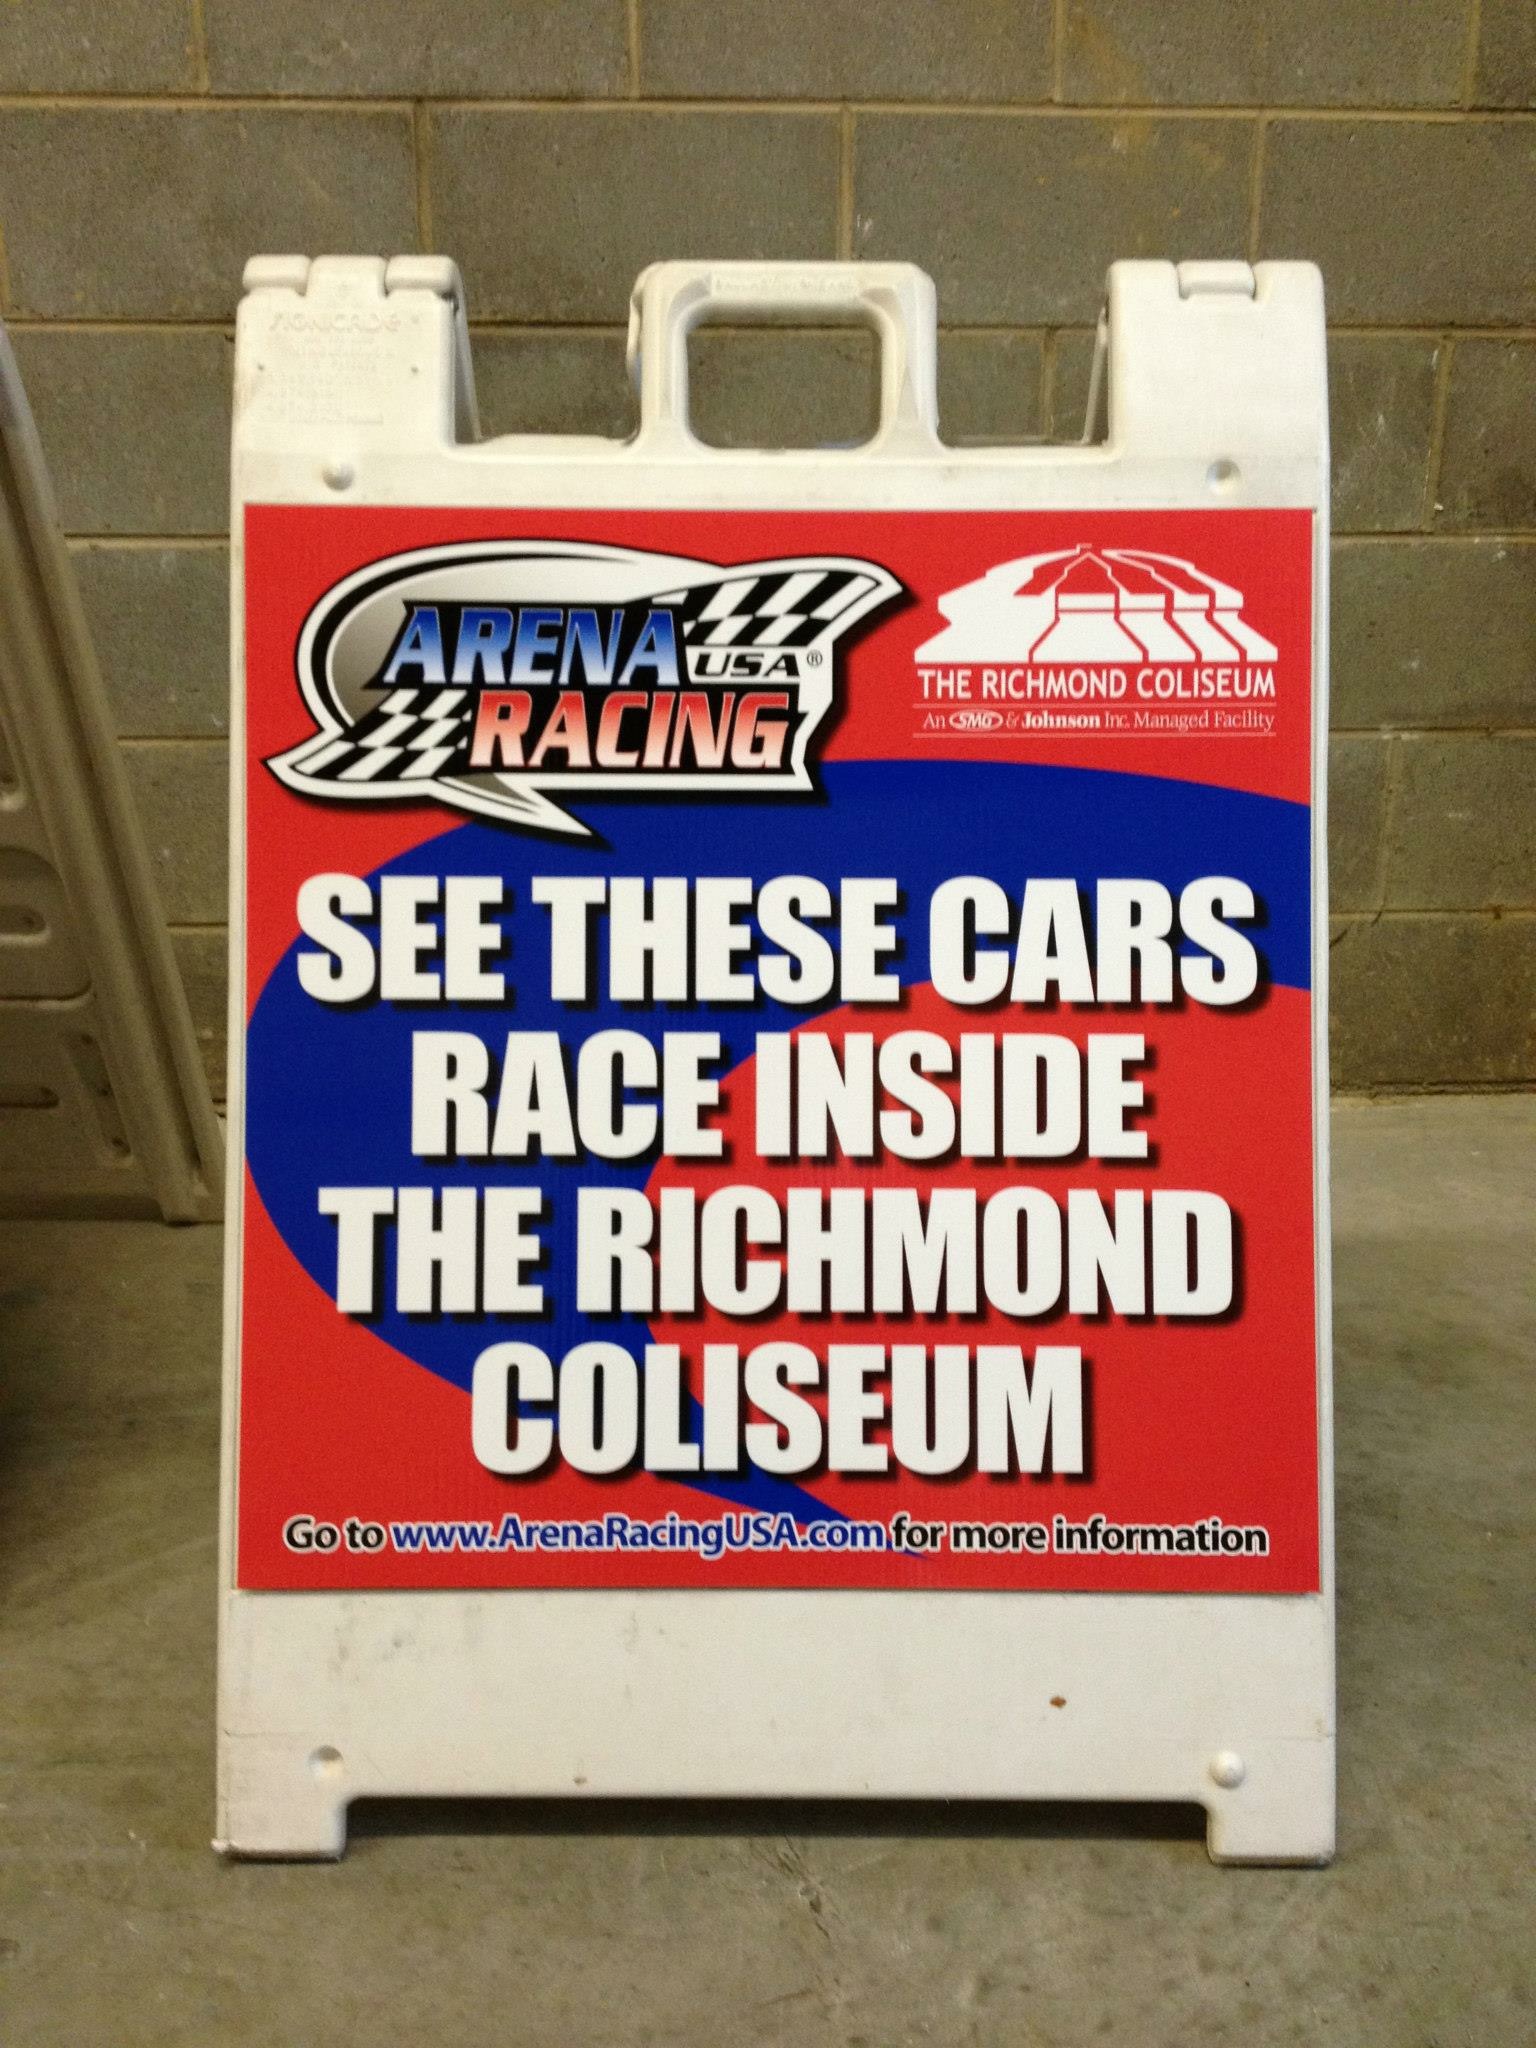 a frame sign for arena usa racing